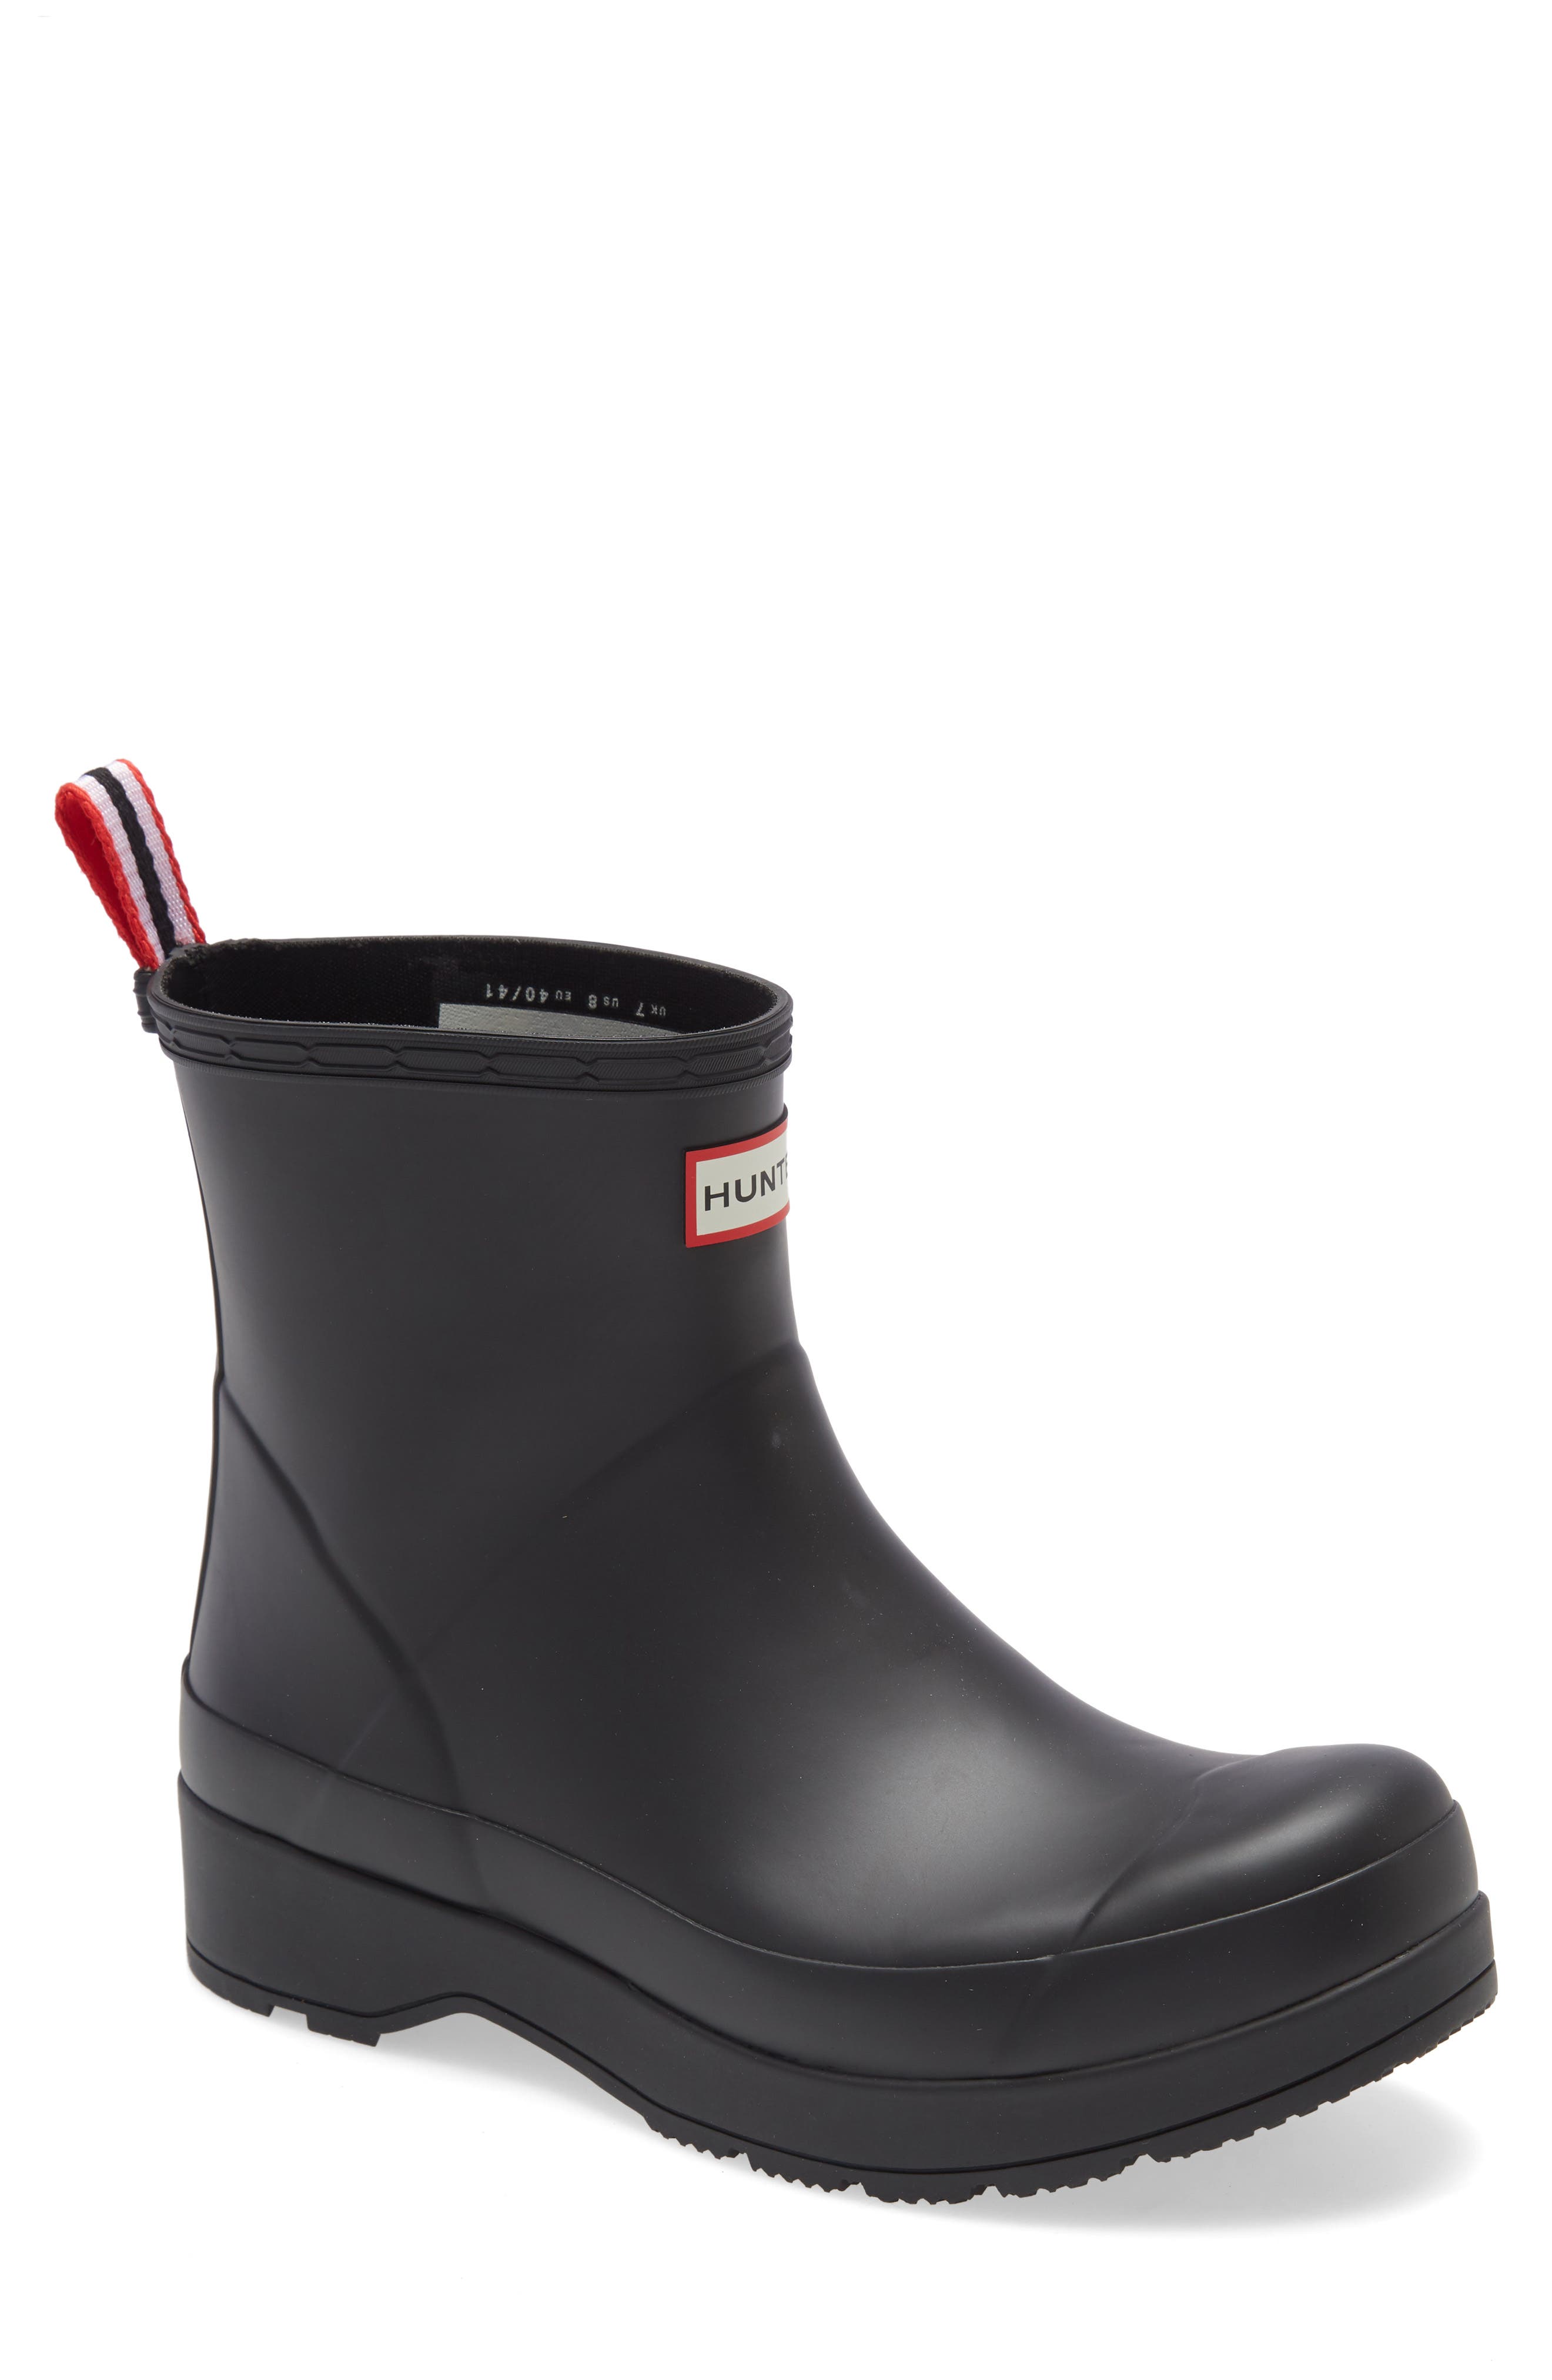 designer rain boots for men